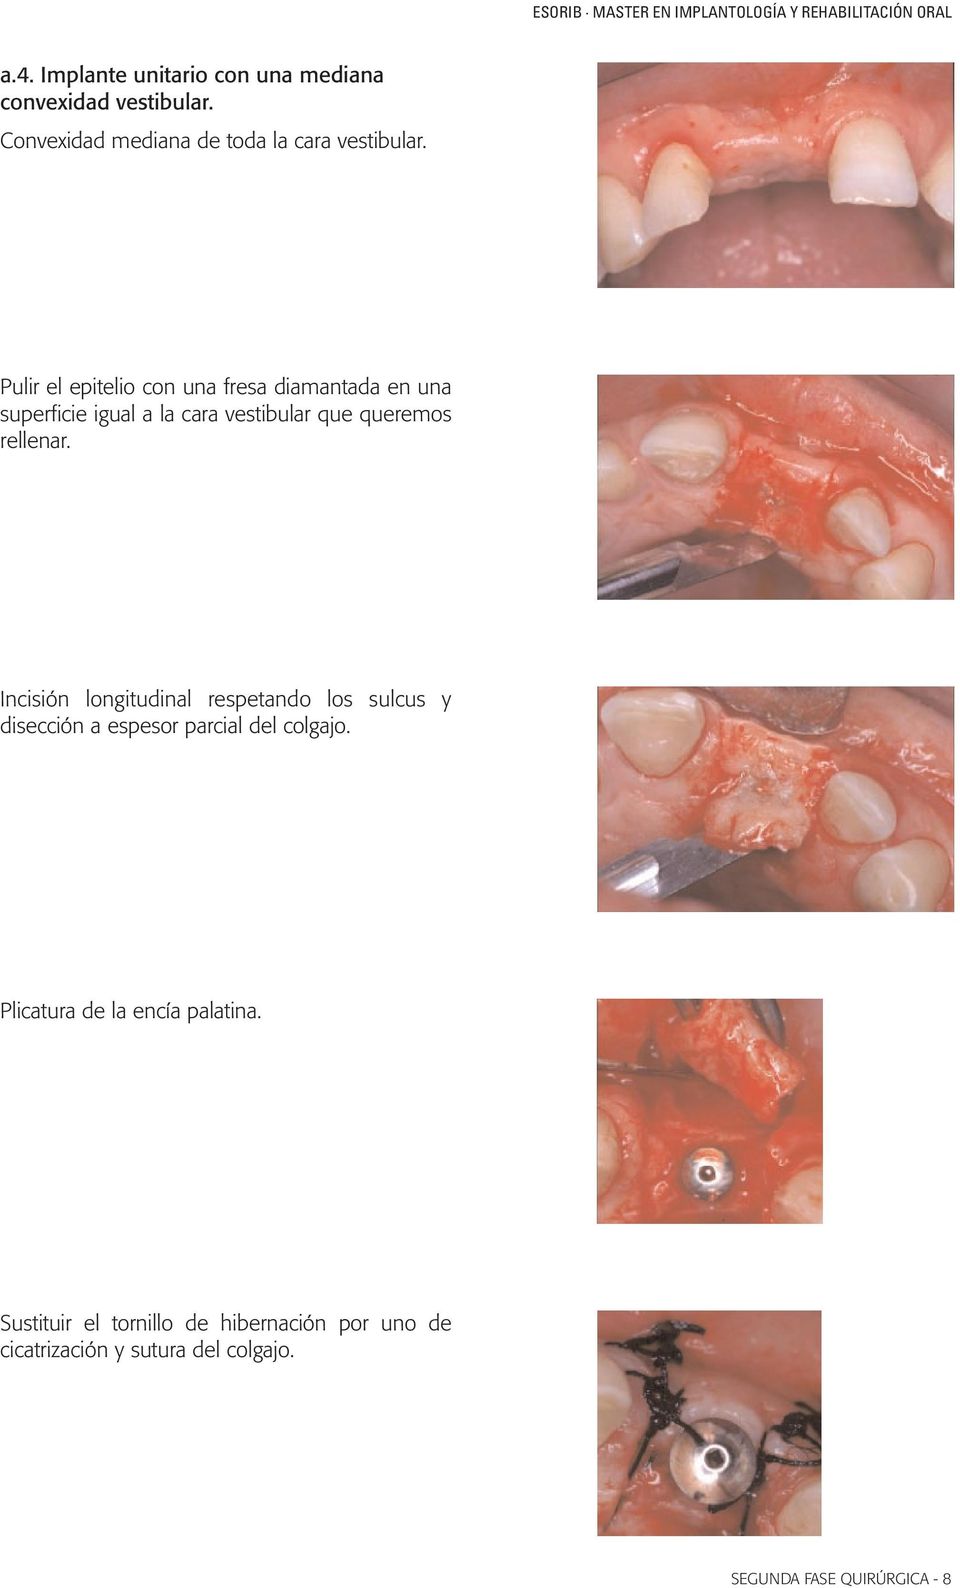 Incisión longitudinal respetando los sulcus y disección a espesor parcial del colgajo.